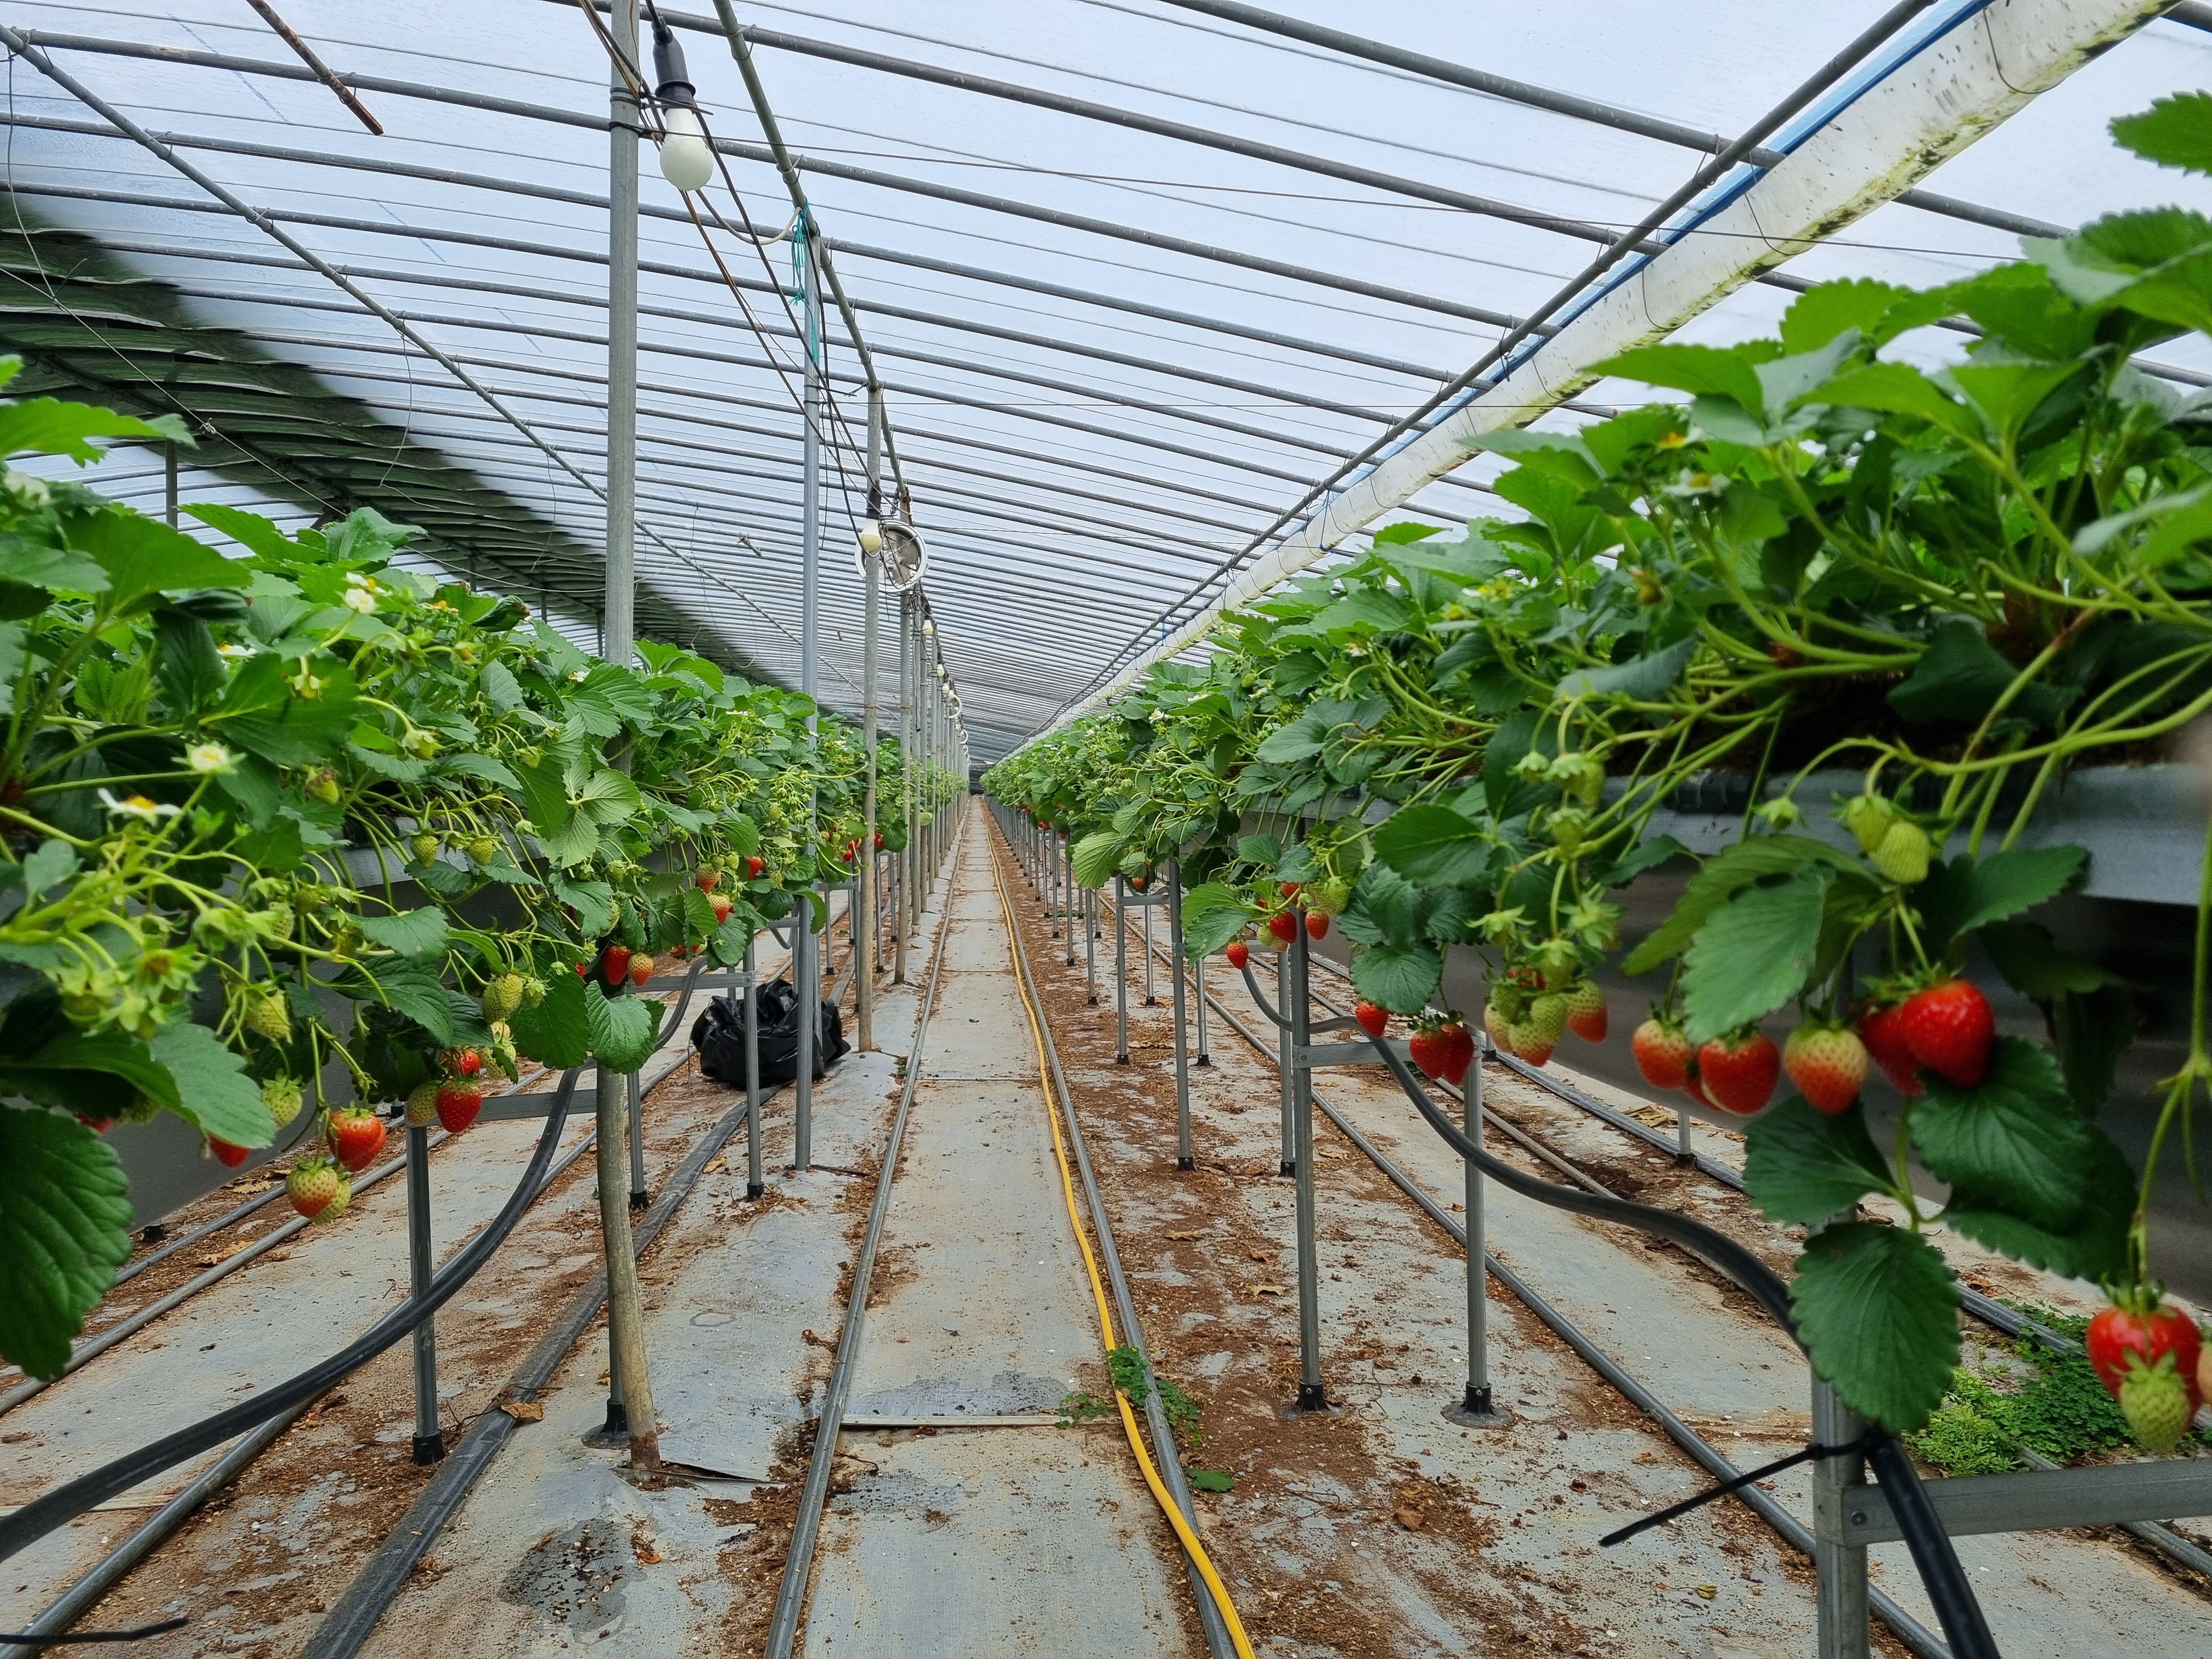 딸기수확체험